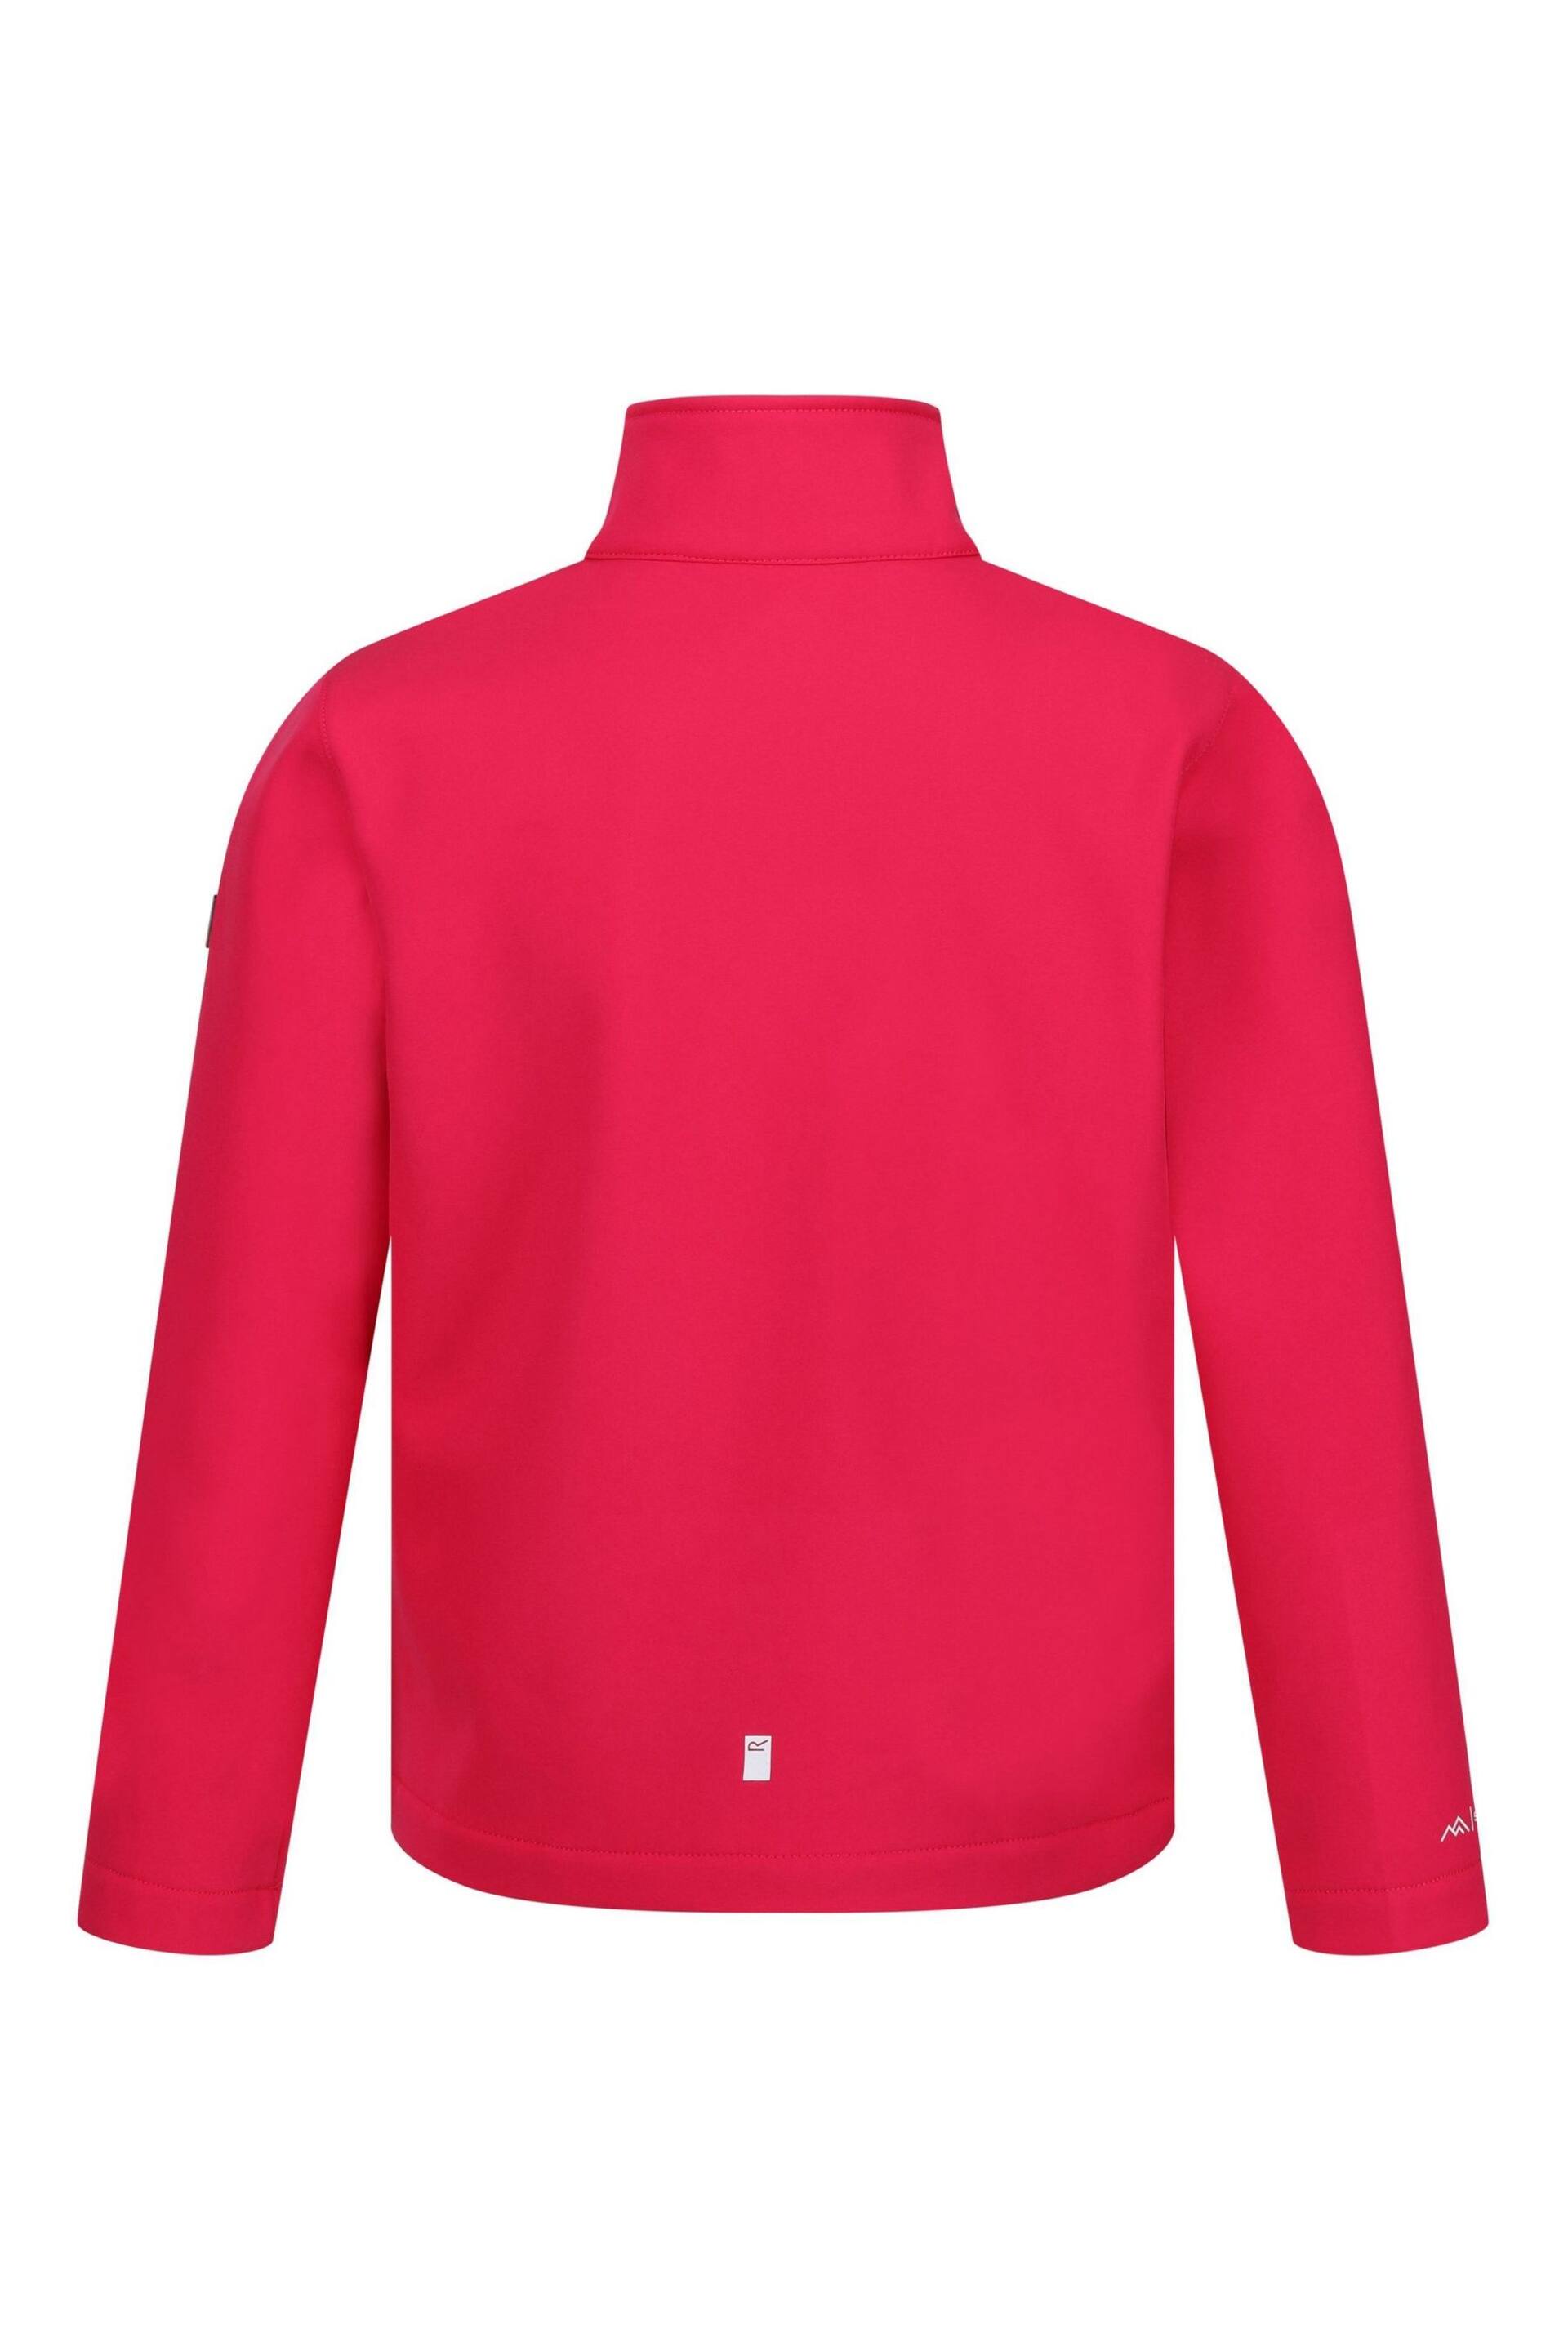 Regatta Pink Junior Cera Softshell Jacket - Image 6 of 7